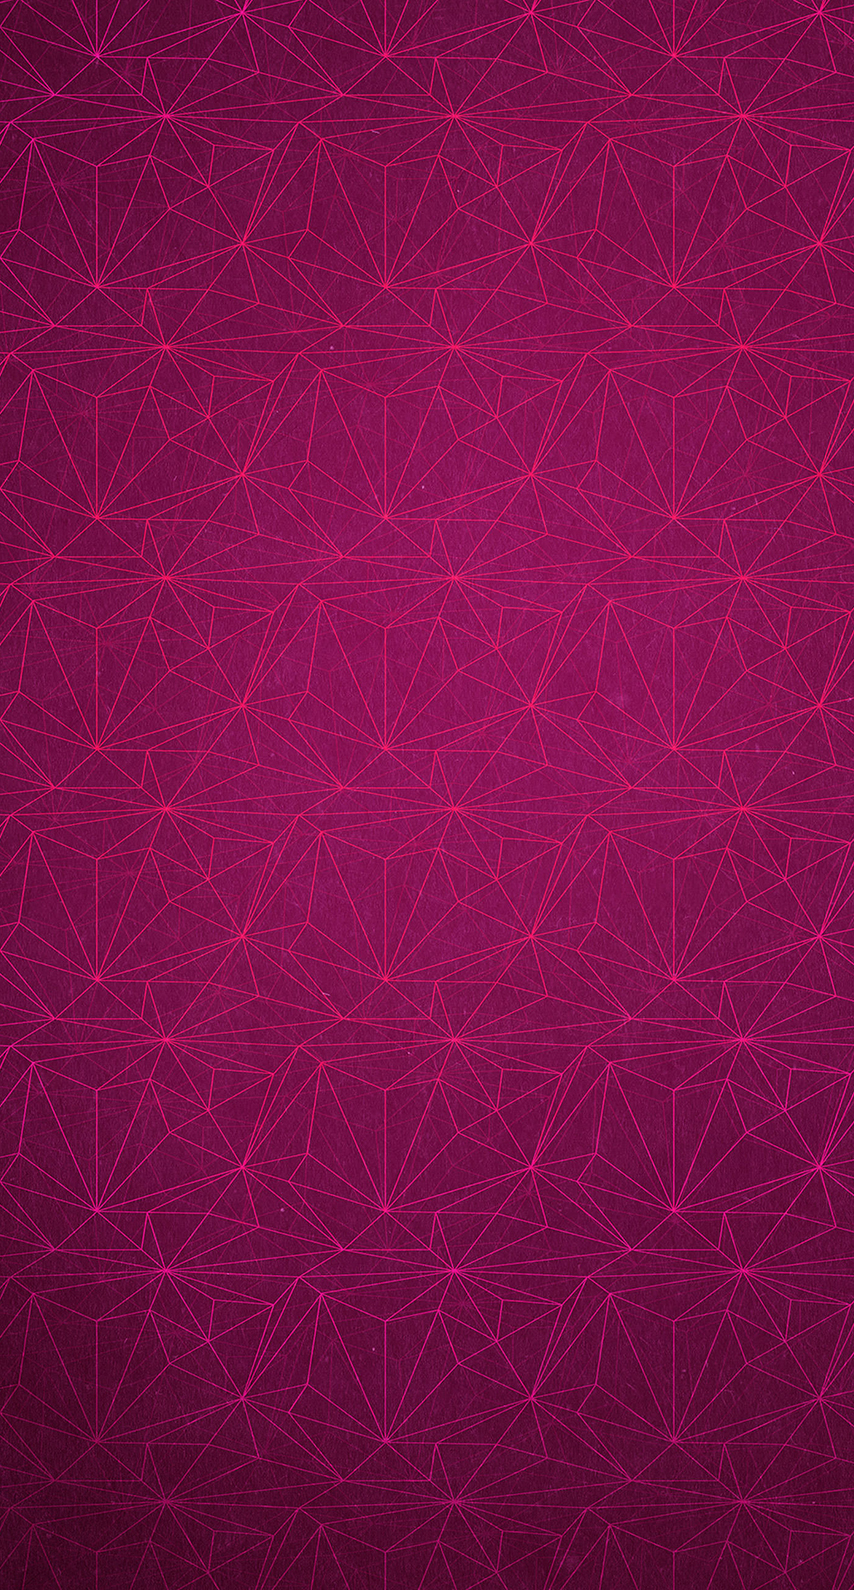 iphone 6sの壁紙,ピンク,紫の,バイオレット,赤,パターン